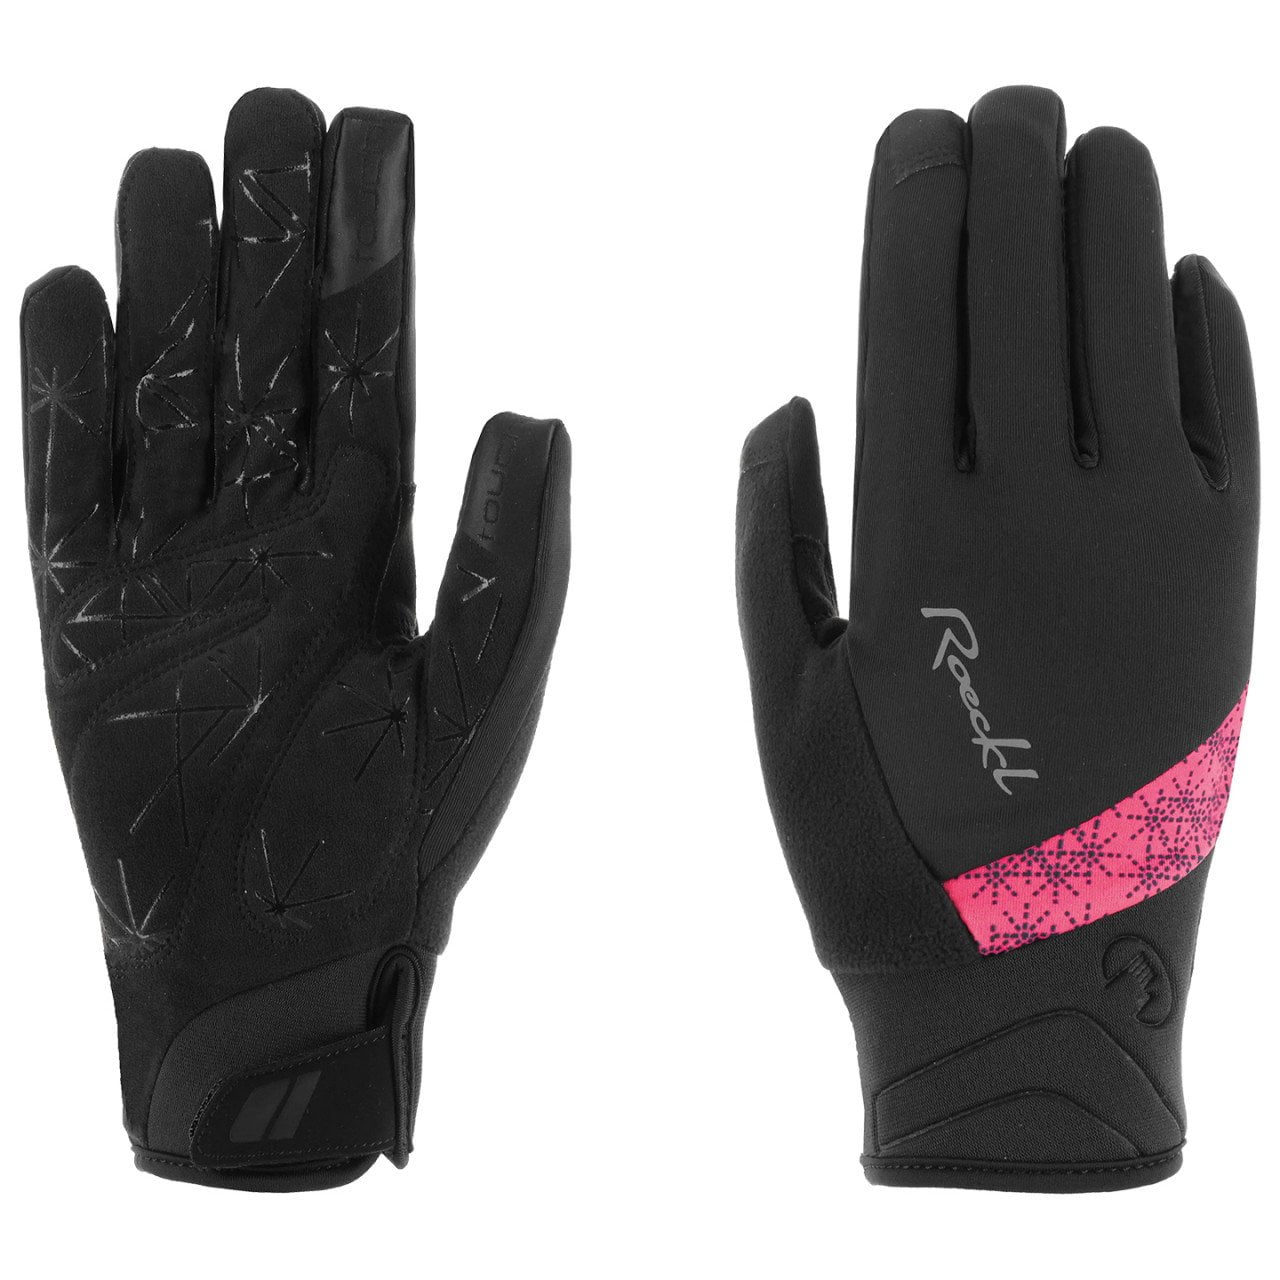 Waldau Women's Winter Gloves